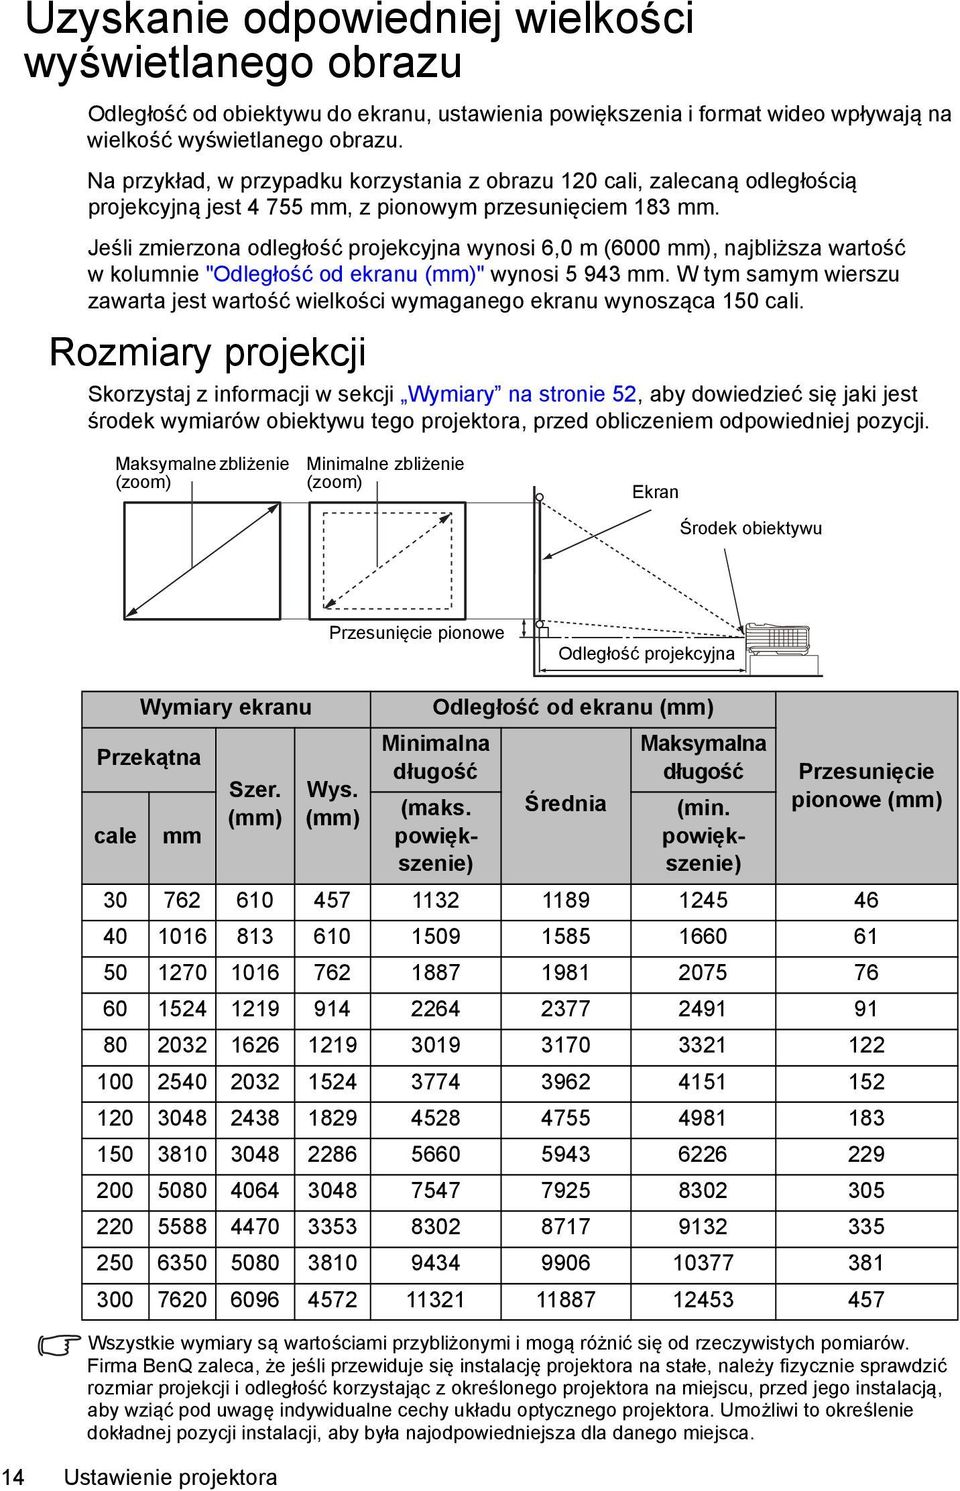 Jeśli zmierzona odległość projekcyjna wynosi 6,0 m (6000 mm), najbliższa wartość w kolumnie "Odległość od ekranu (mm)" wynosi 5 943 mm.